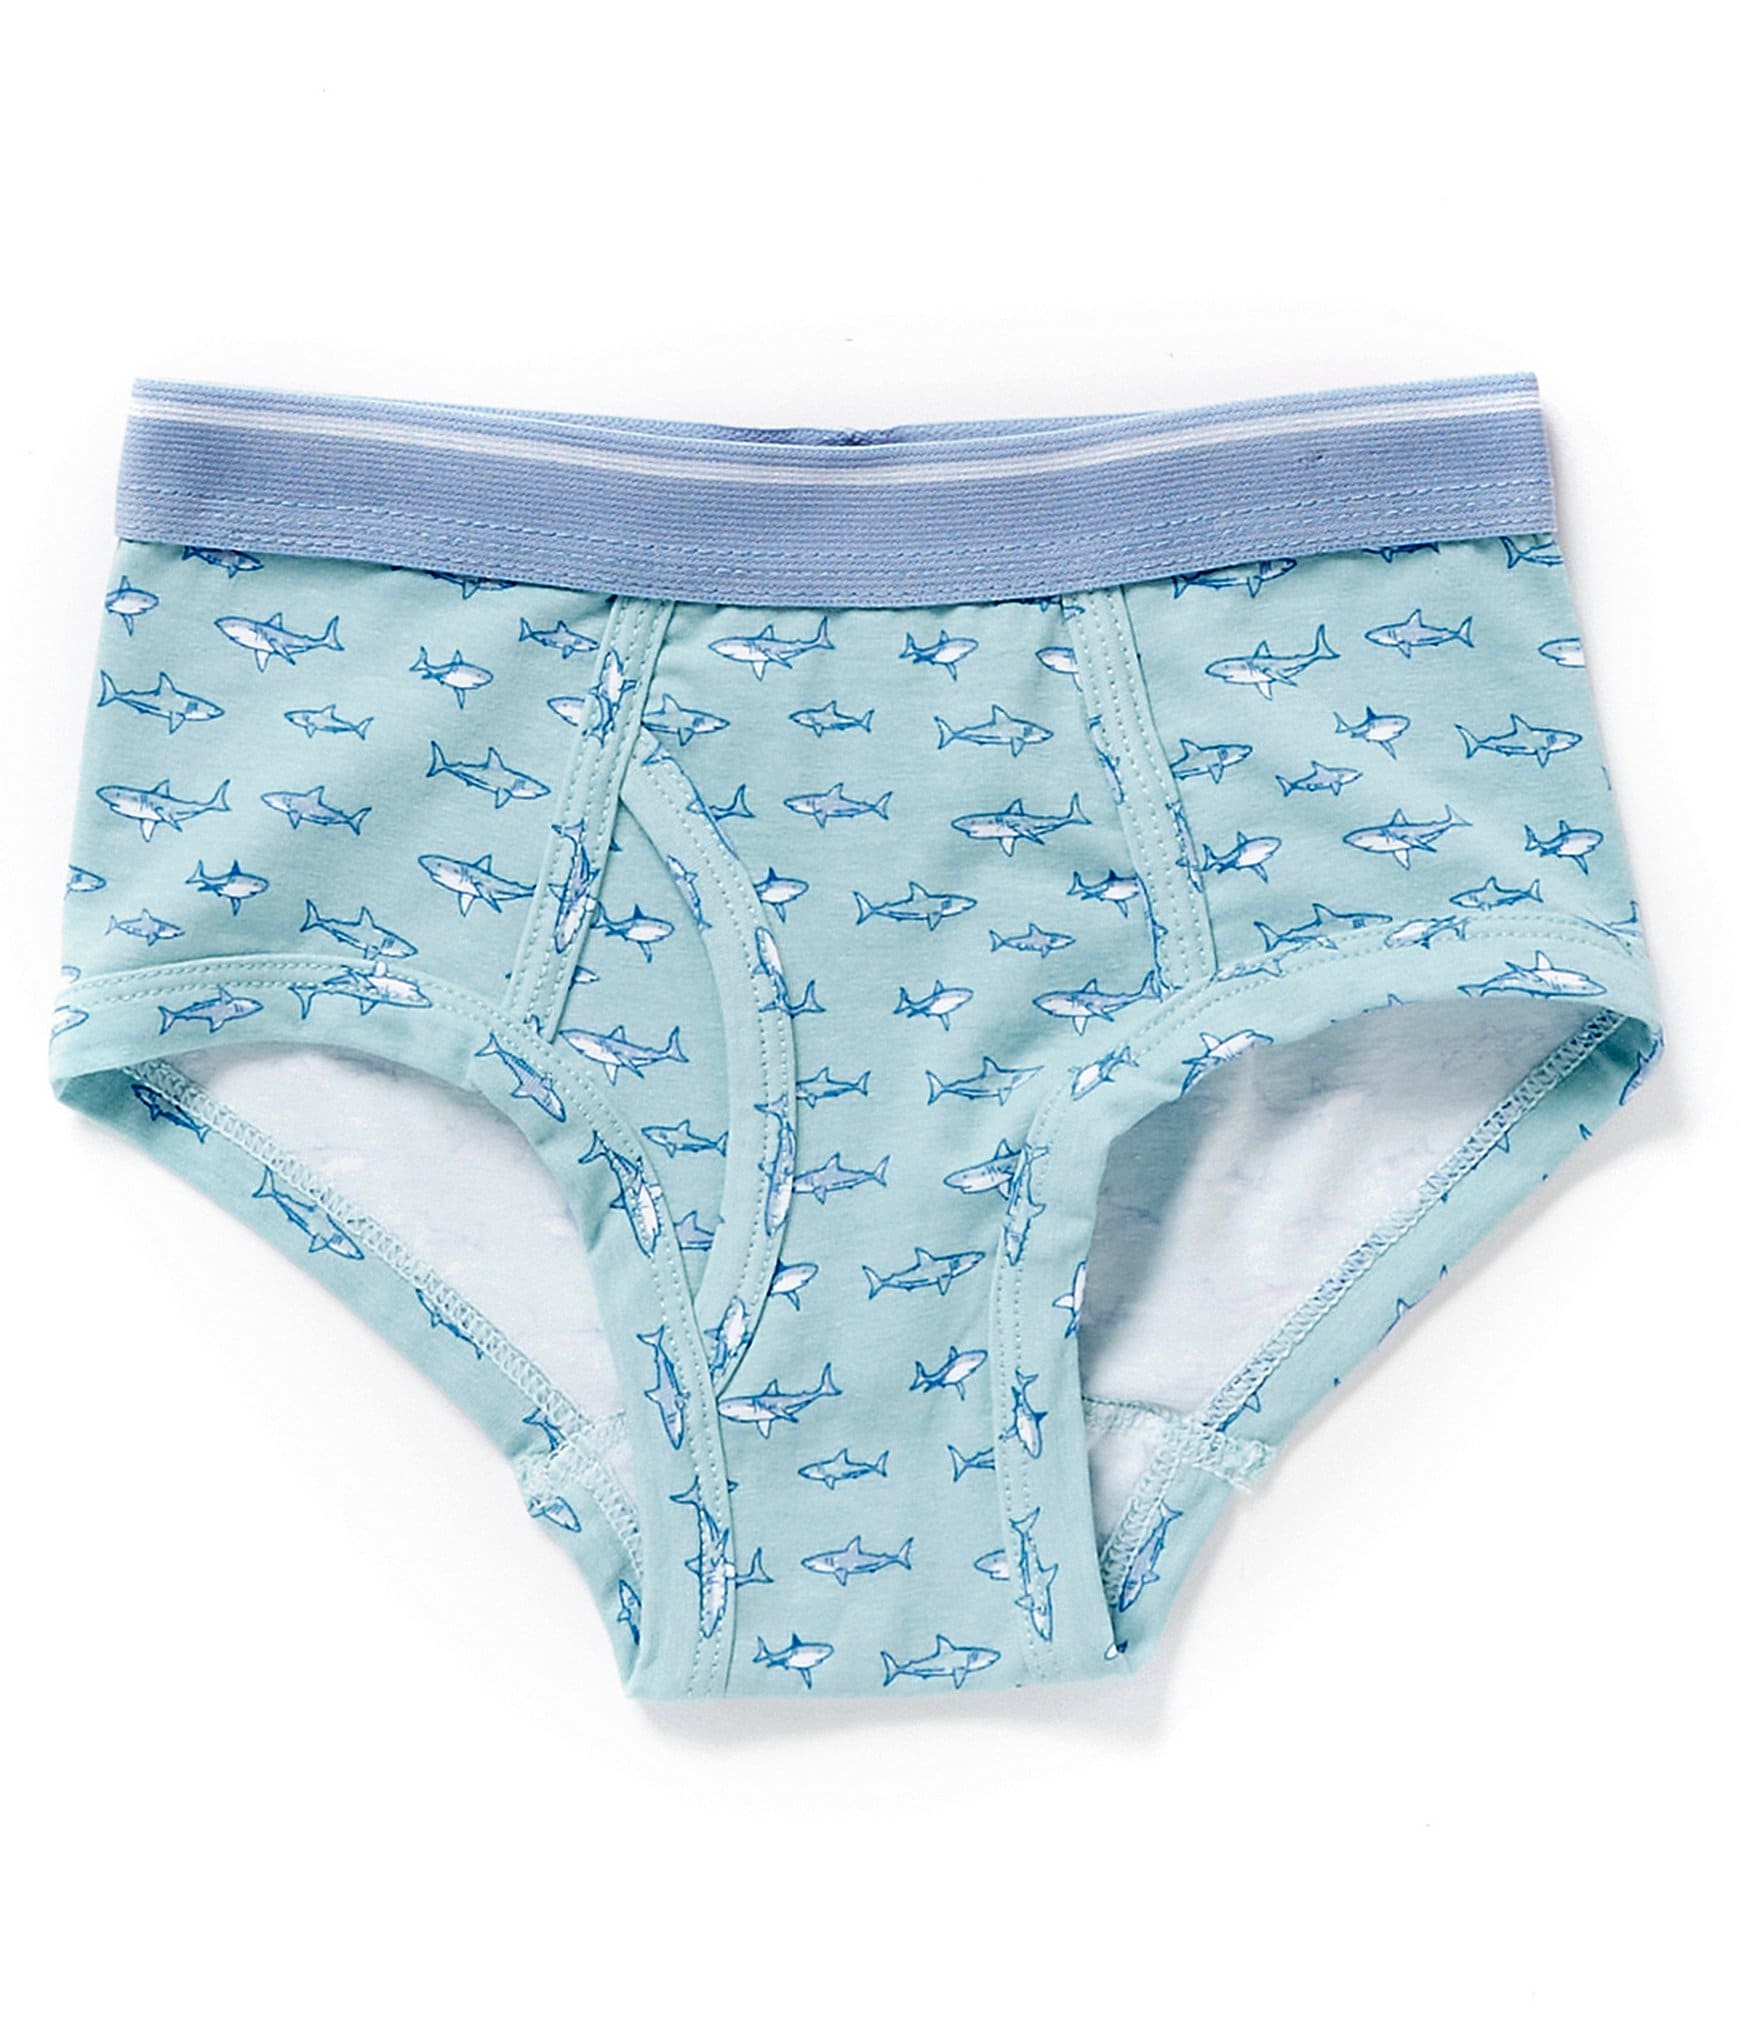 Buy Carter's Boys Underwear Brief -3 in 1 in Nigeria